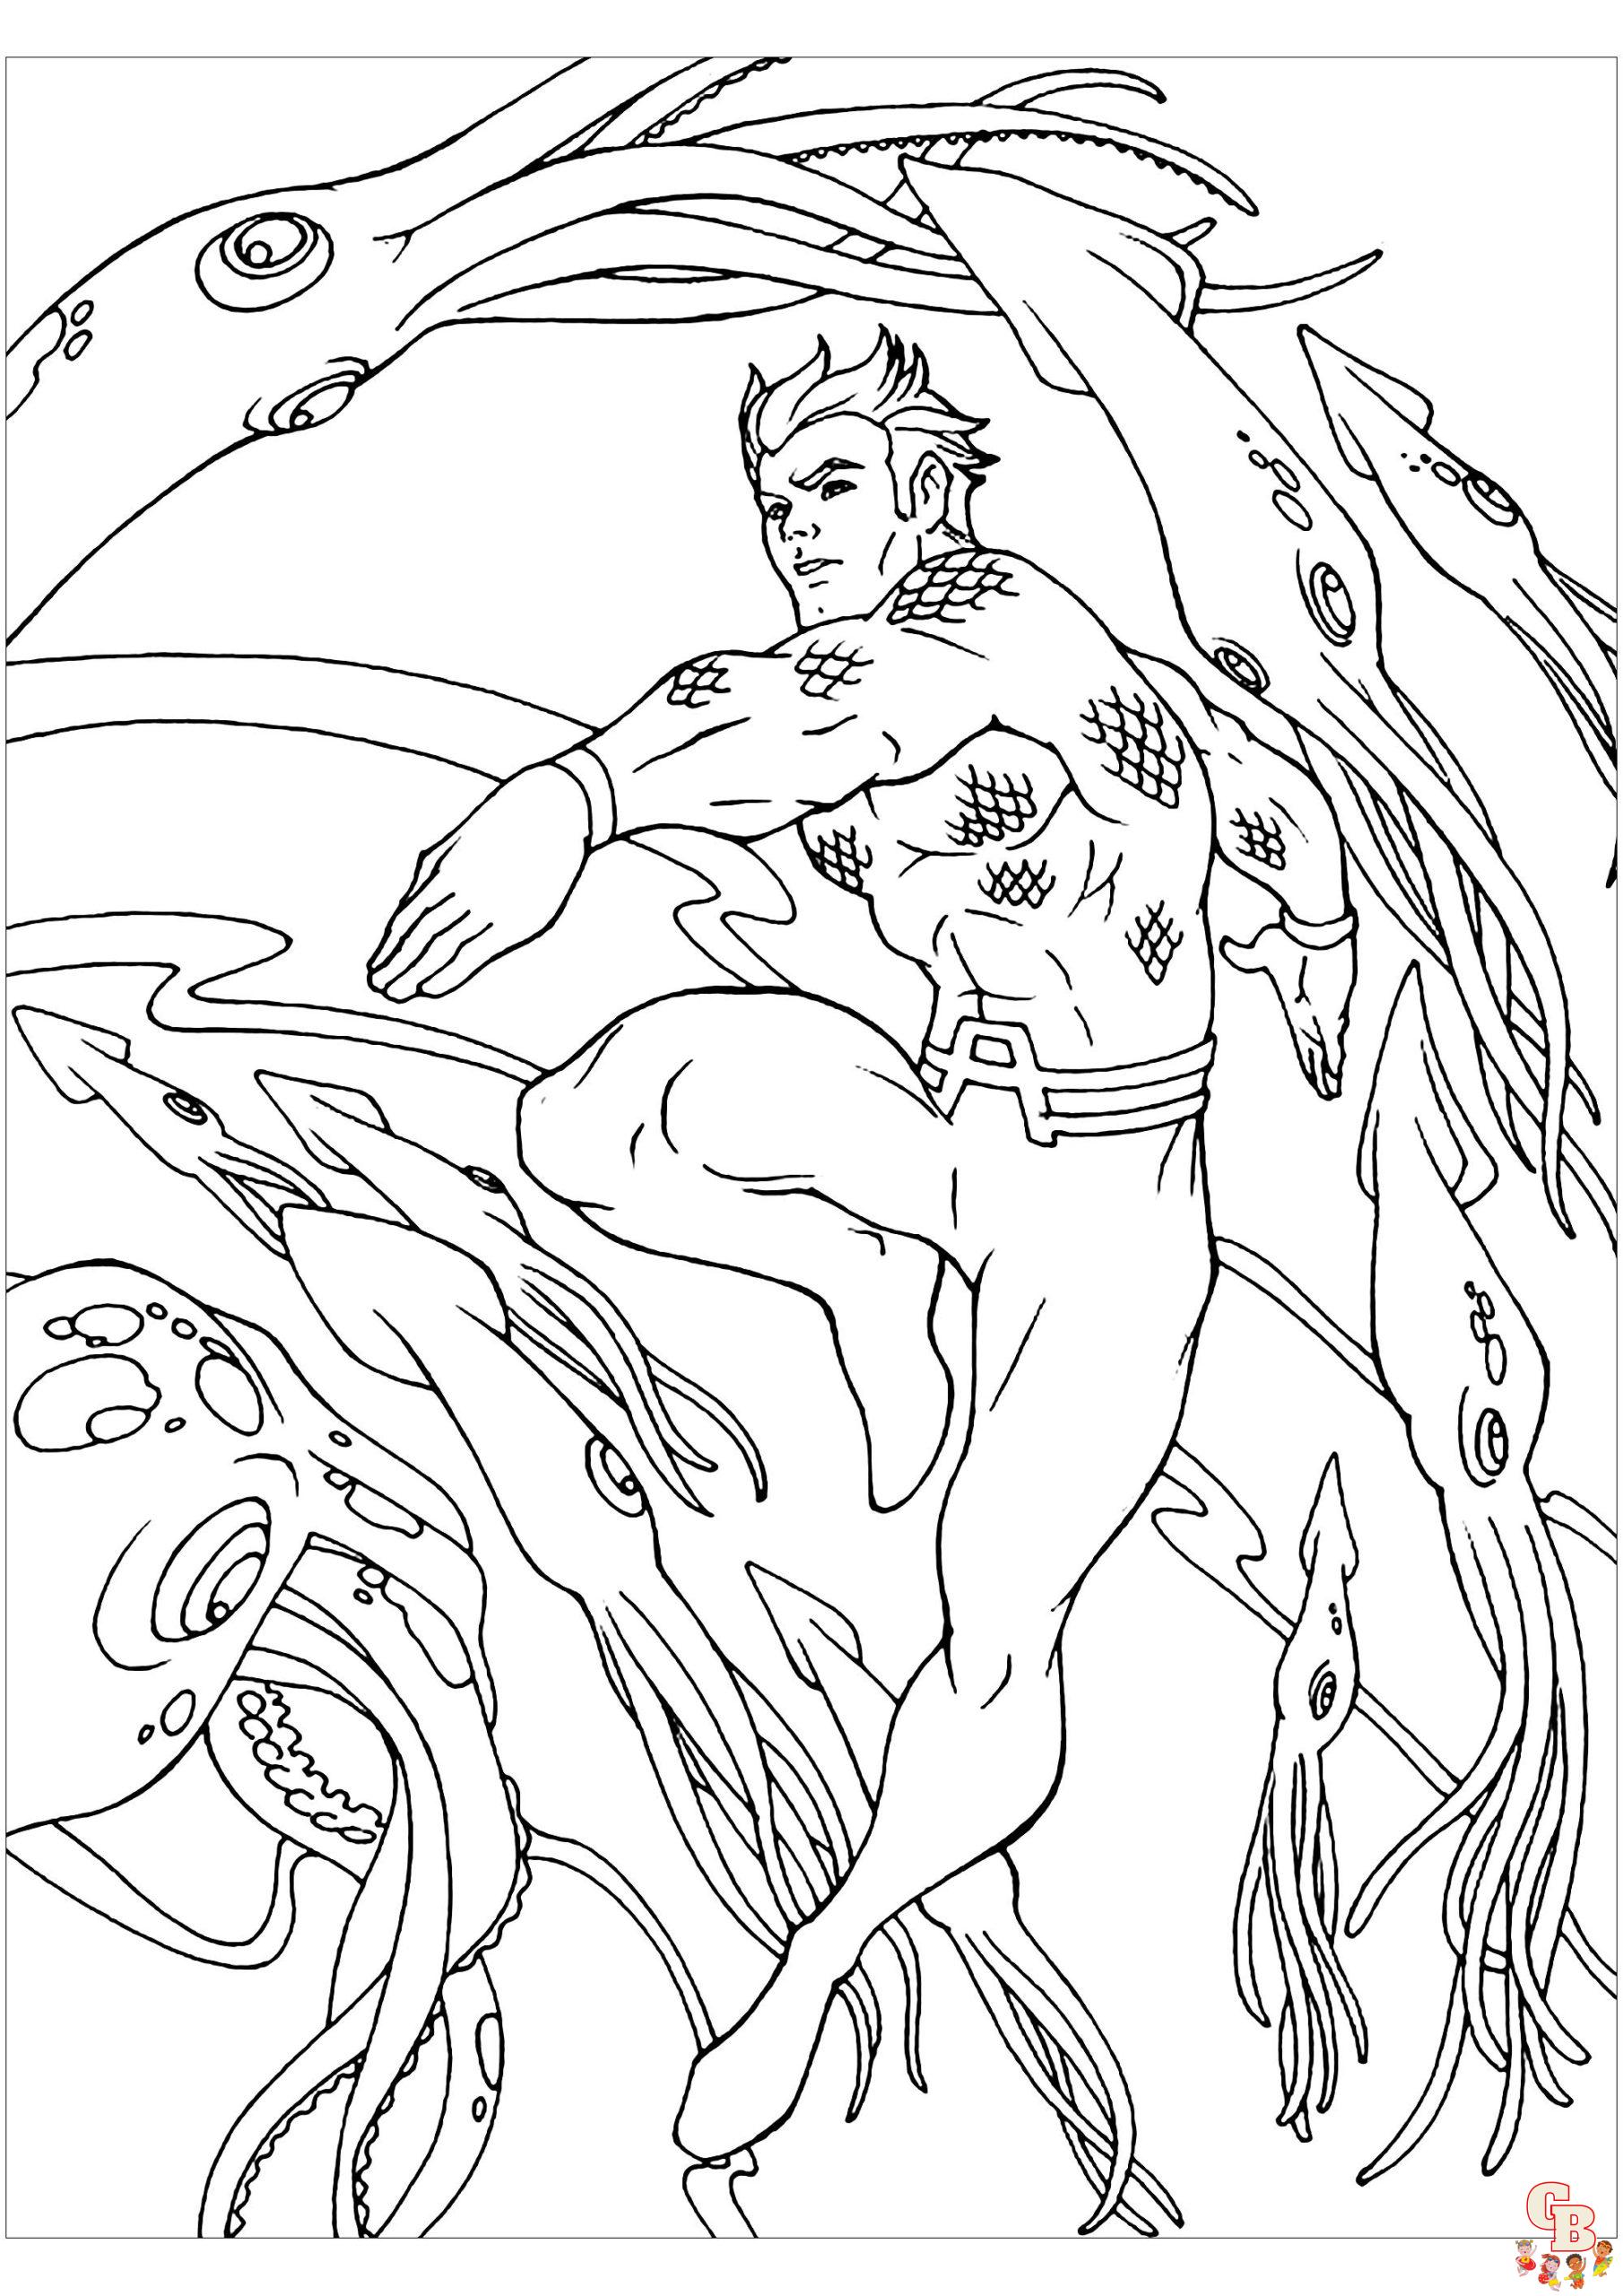 Aquaman kleurplaat